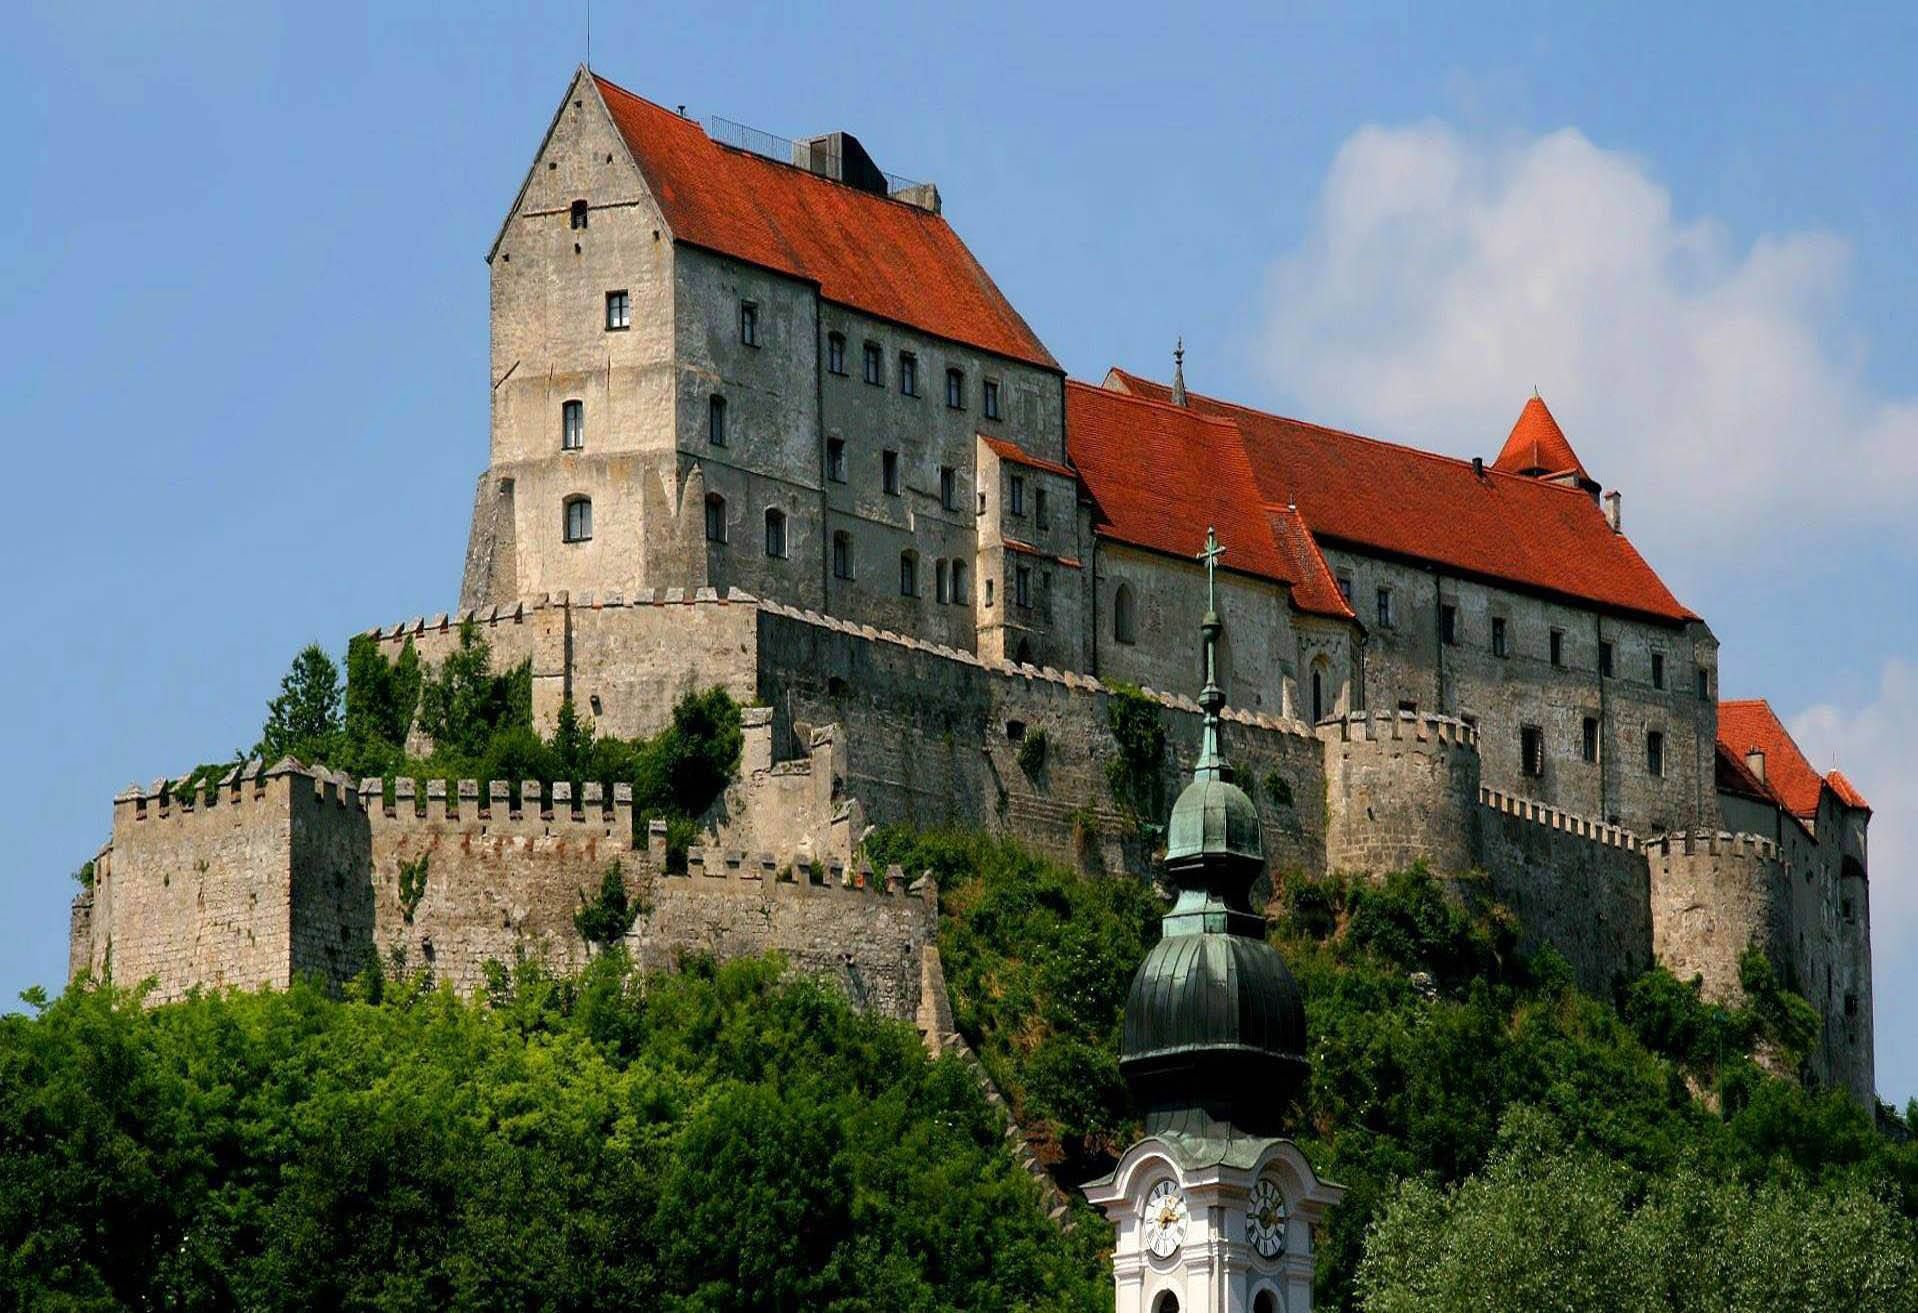 Hauptburg Burghausen Castle | Take Me Here | Pinterest | Castles and ...